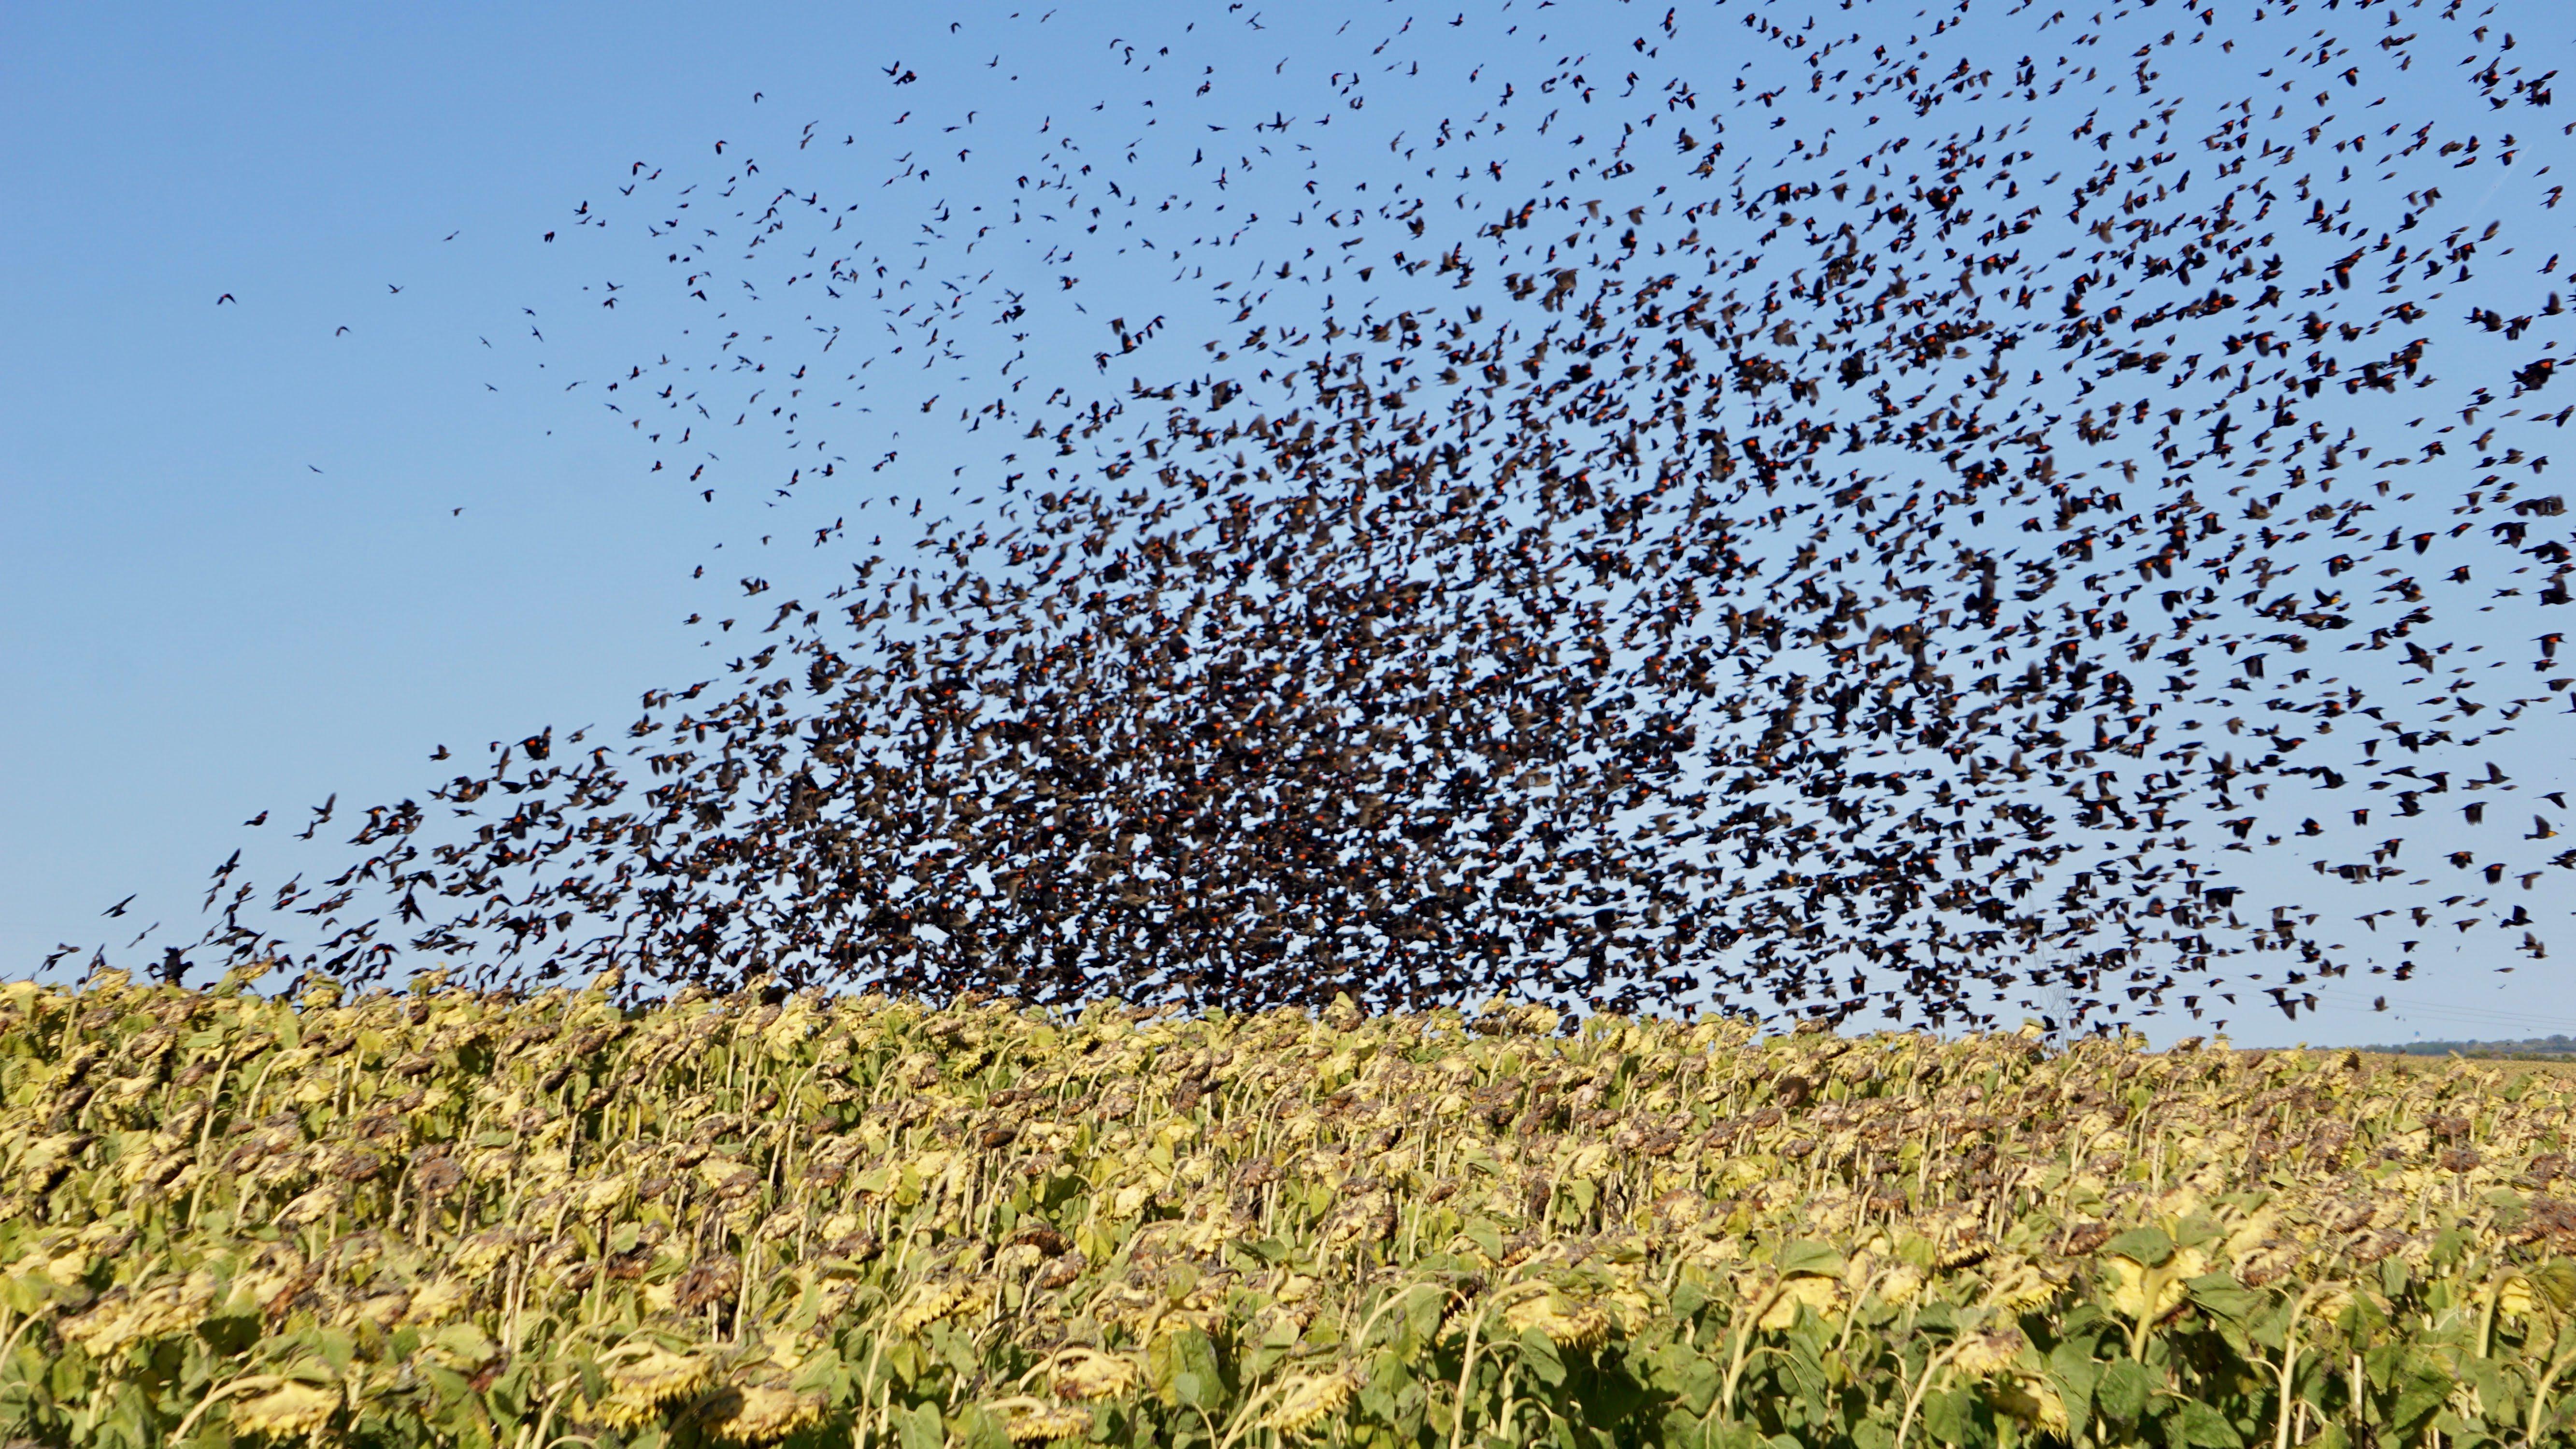 flock of starlings/blackbirds